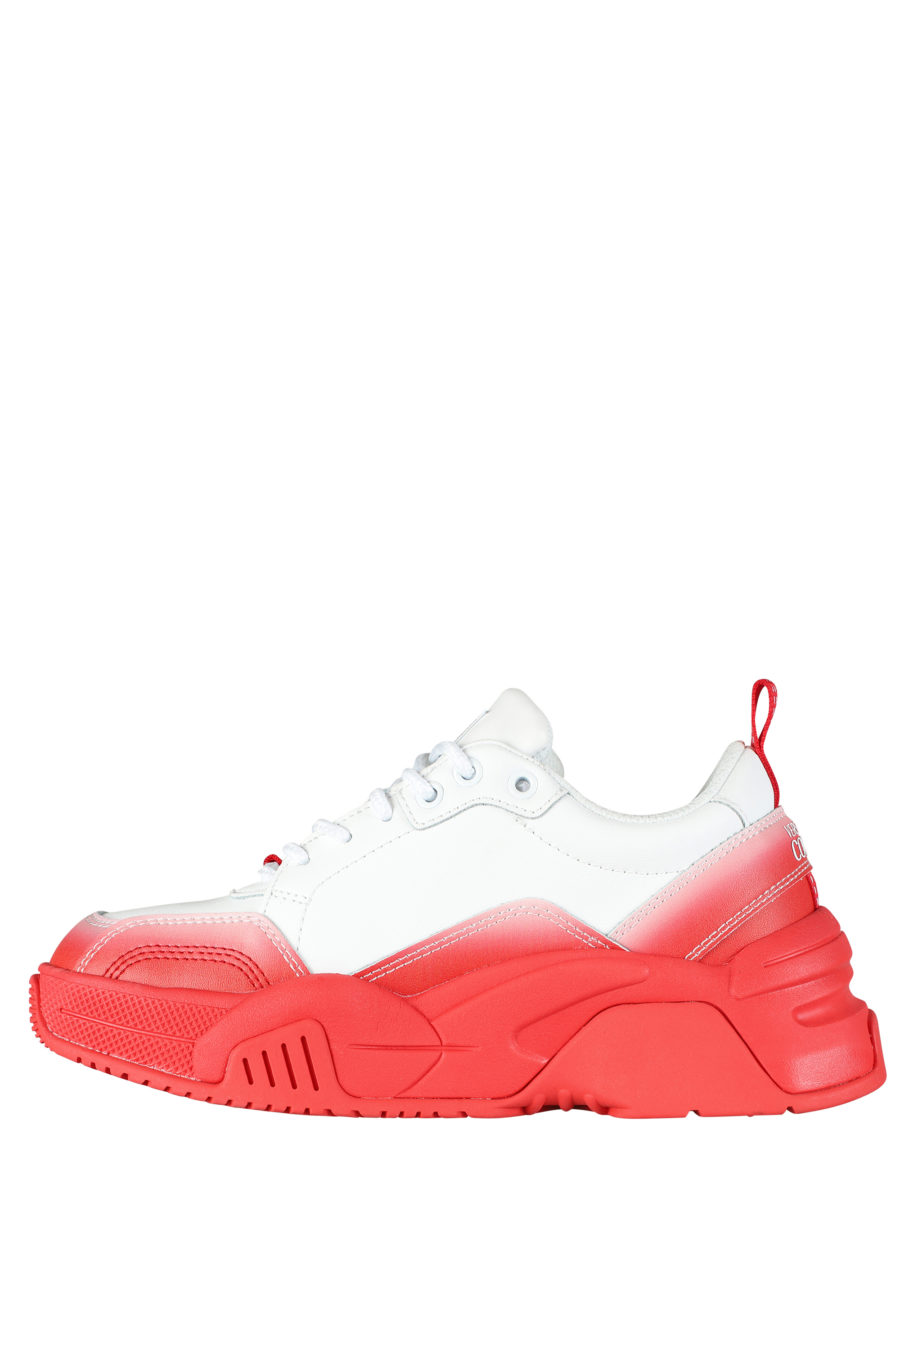 Zapatillas blancas con degrade rojo "stargaze" - IMG 5268